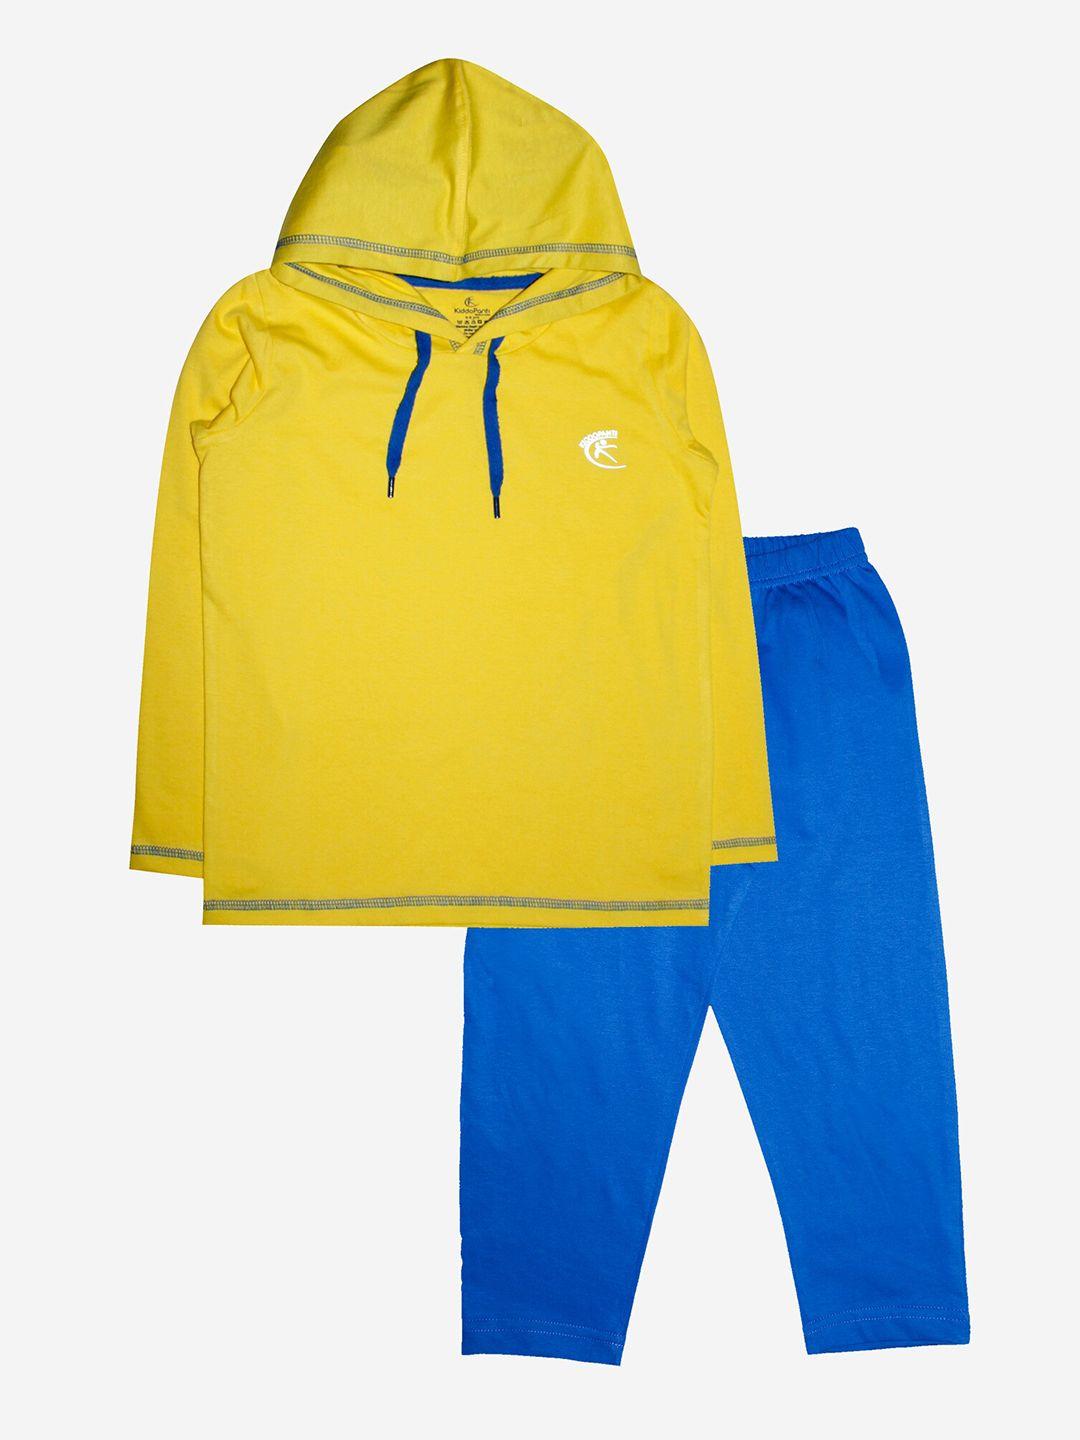 kiddopanti boys yellow & blue printed t-shirt with pyjamas